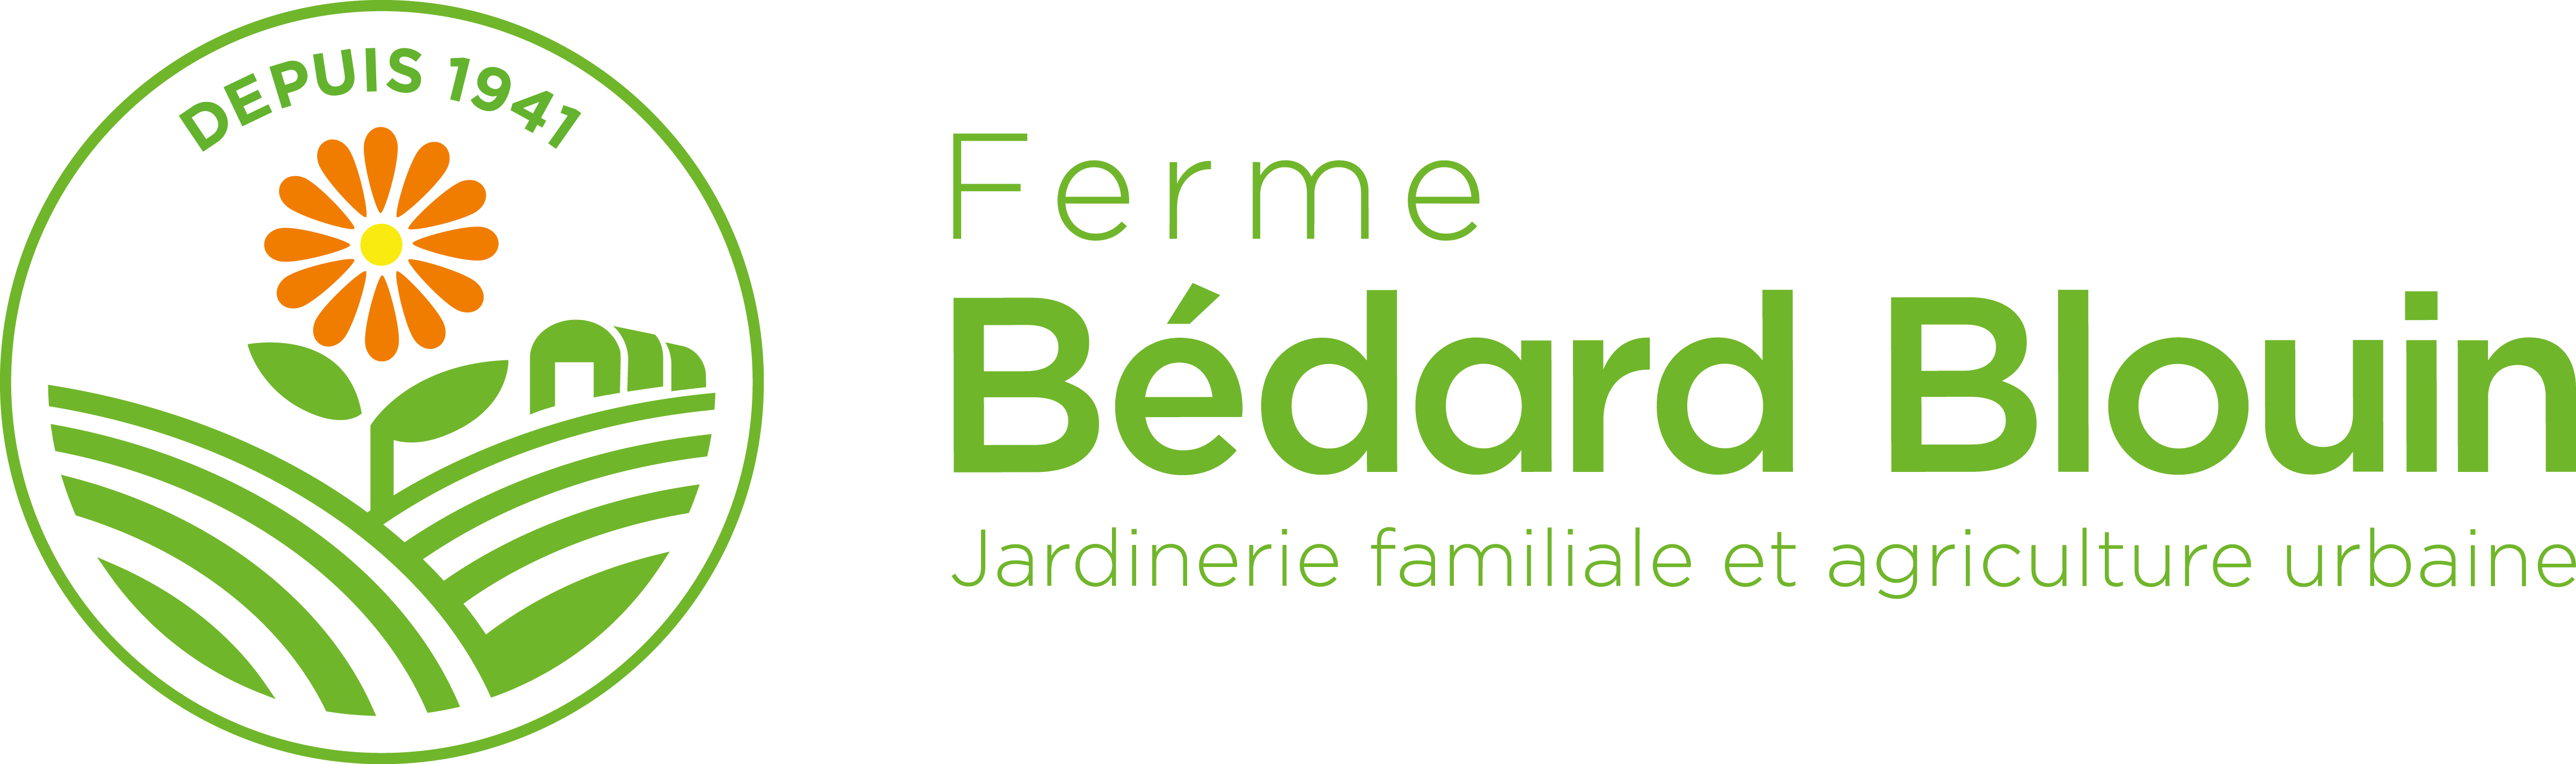 Logo Ferme Bédard Blouin